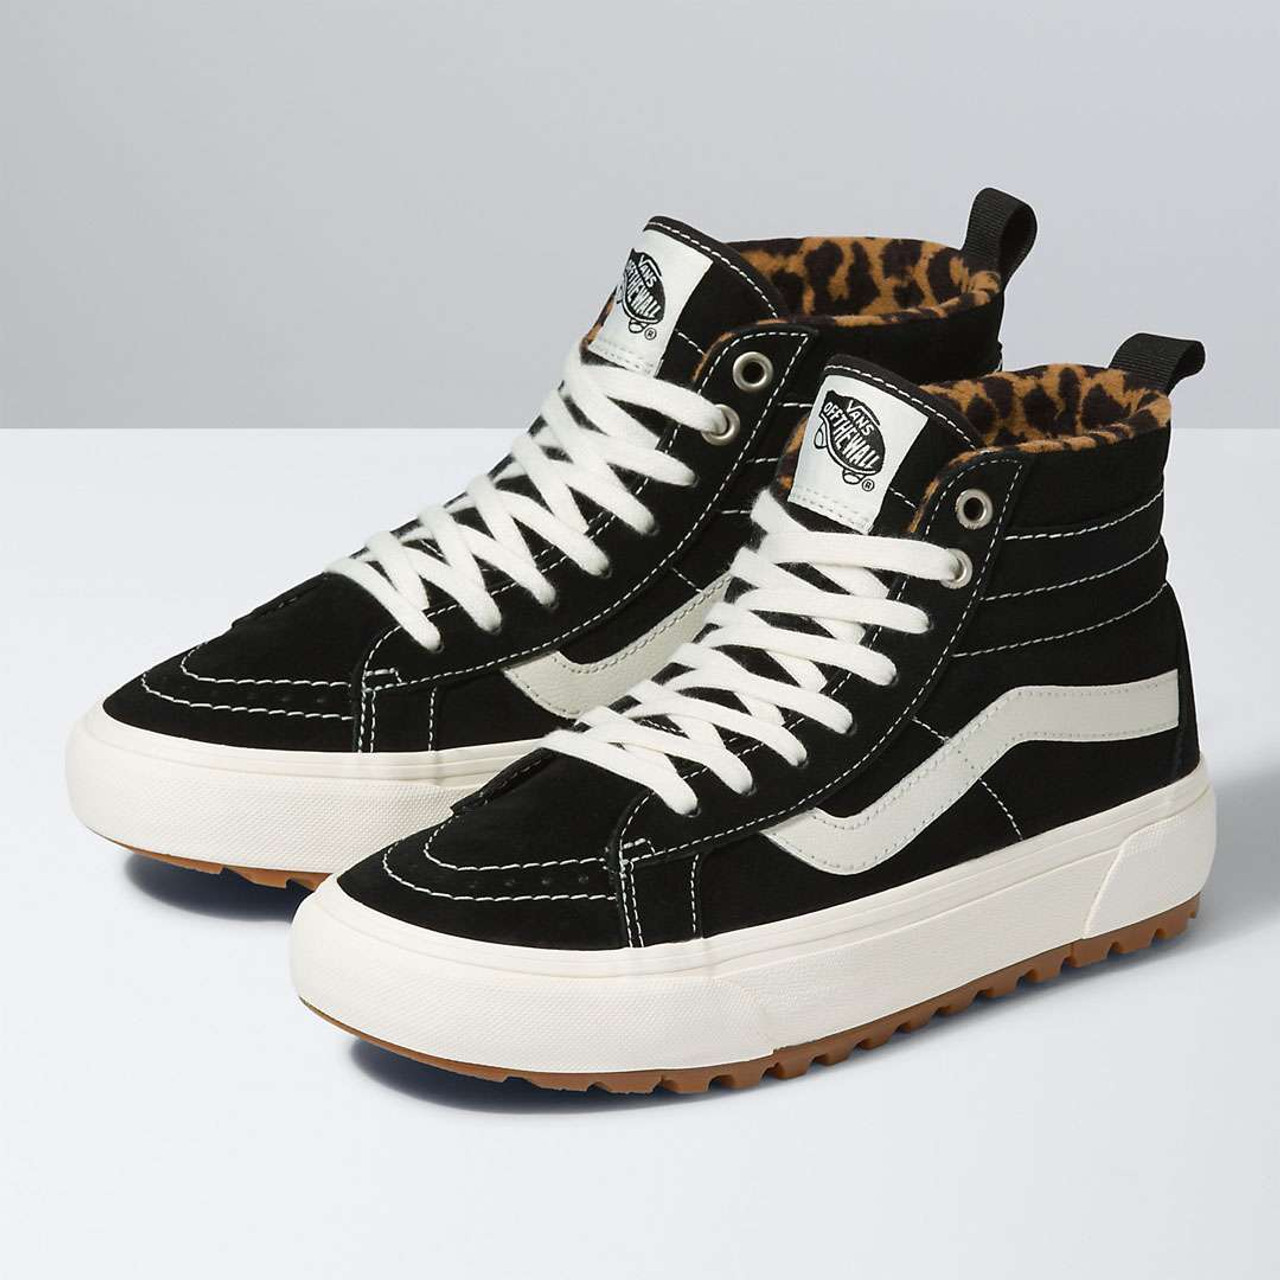 Vans Women's Suede Sk8-Hi MTE-1 Shoes - Black/ Leopard $ 114.99